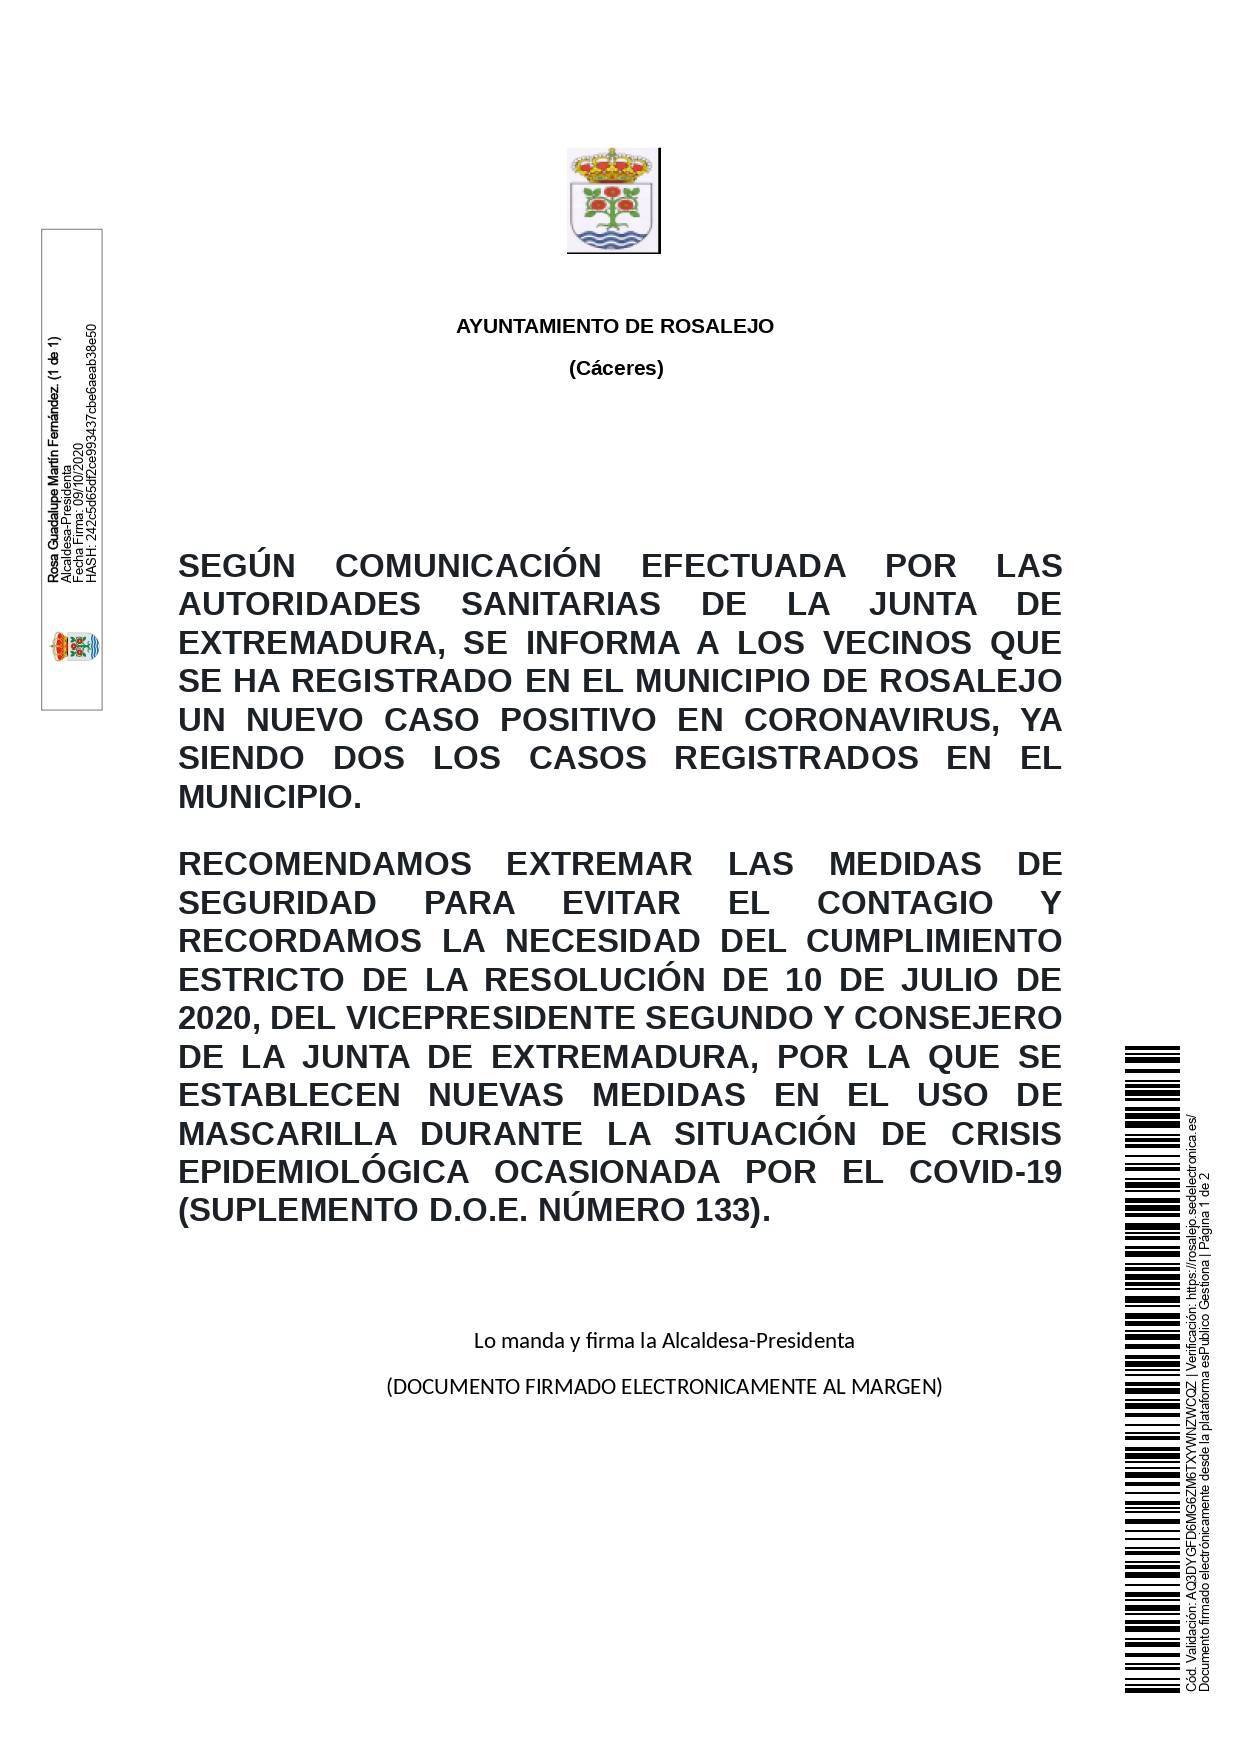 Dos casos activos de COVID-19 (octubre 2020) - Rosalejo (Cáceres)